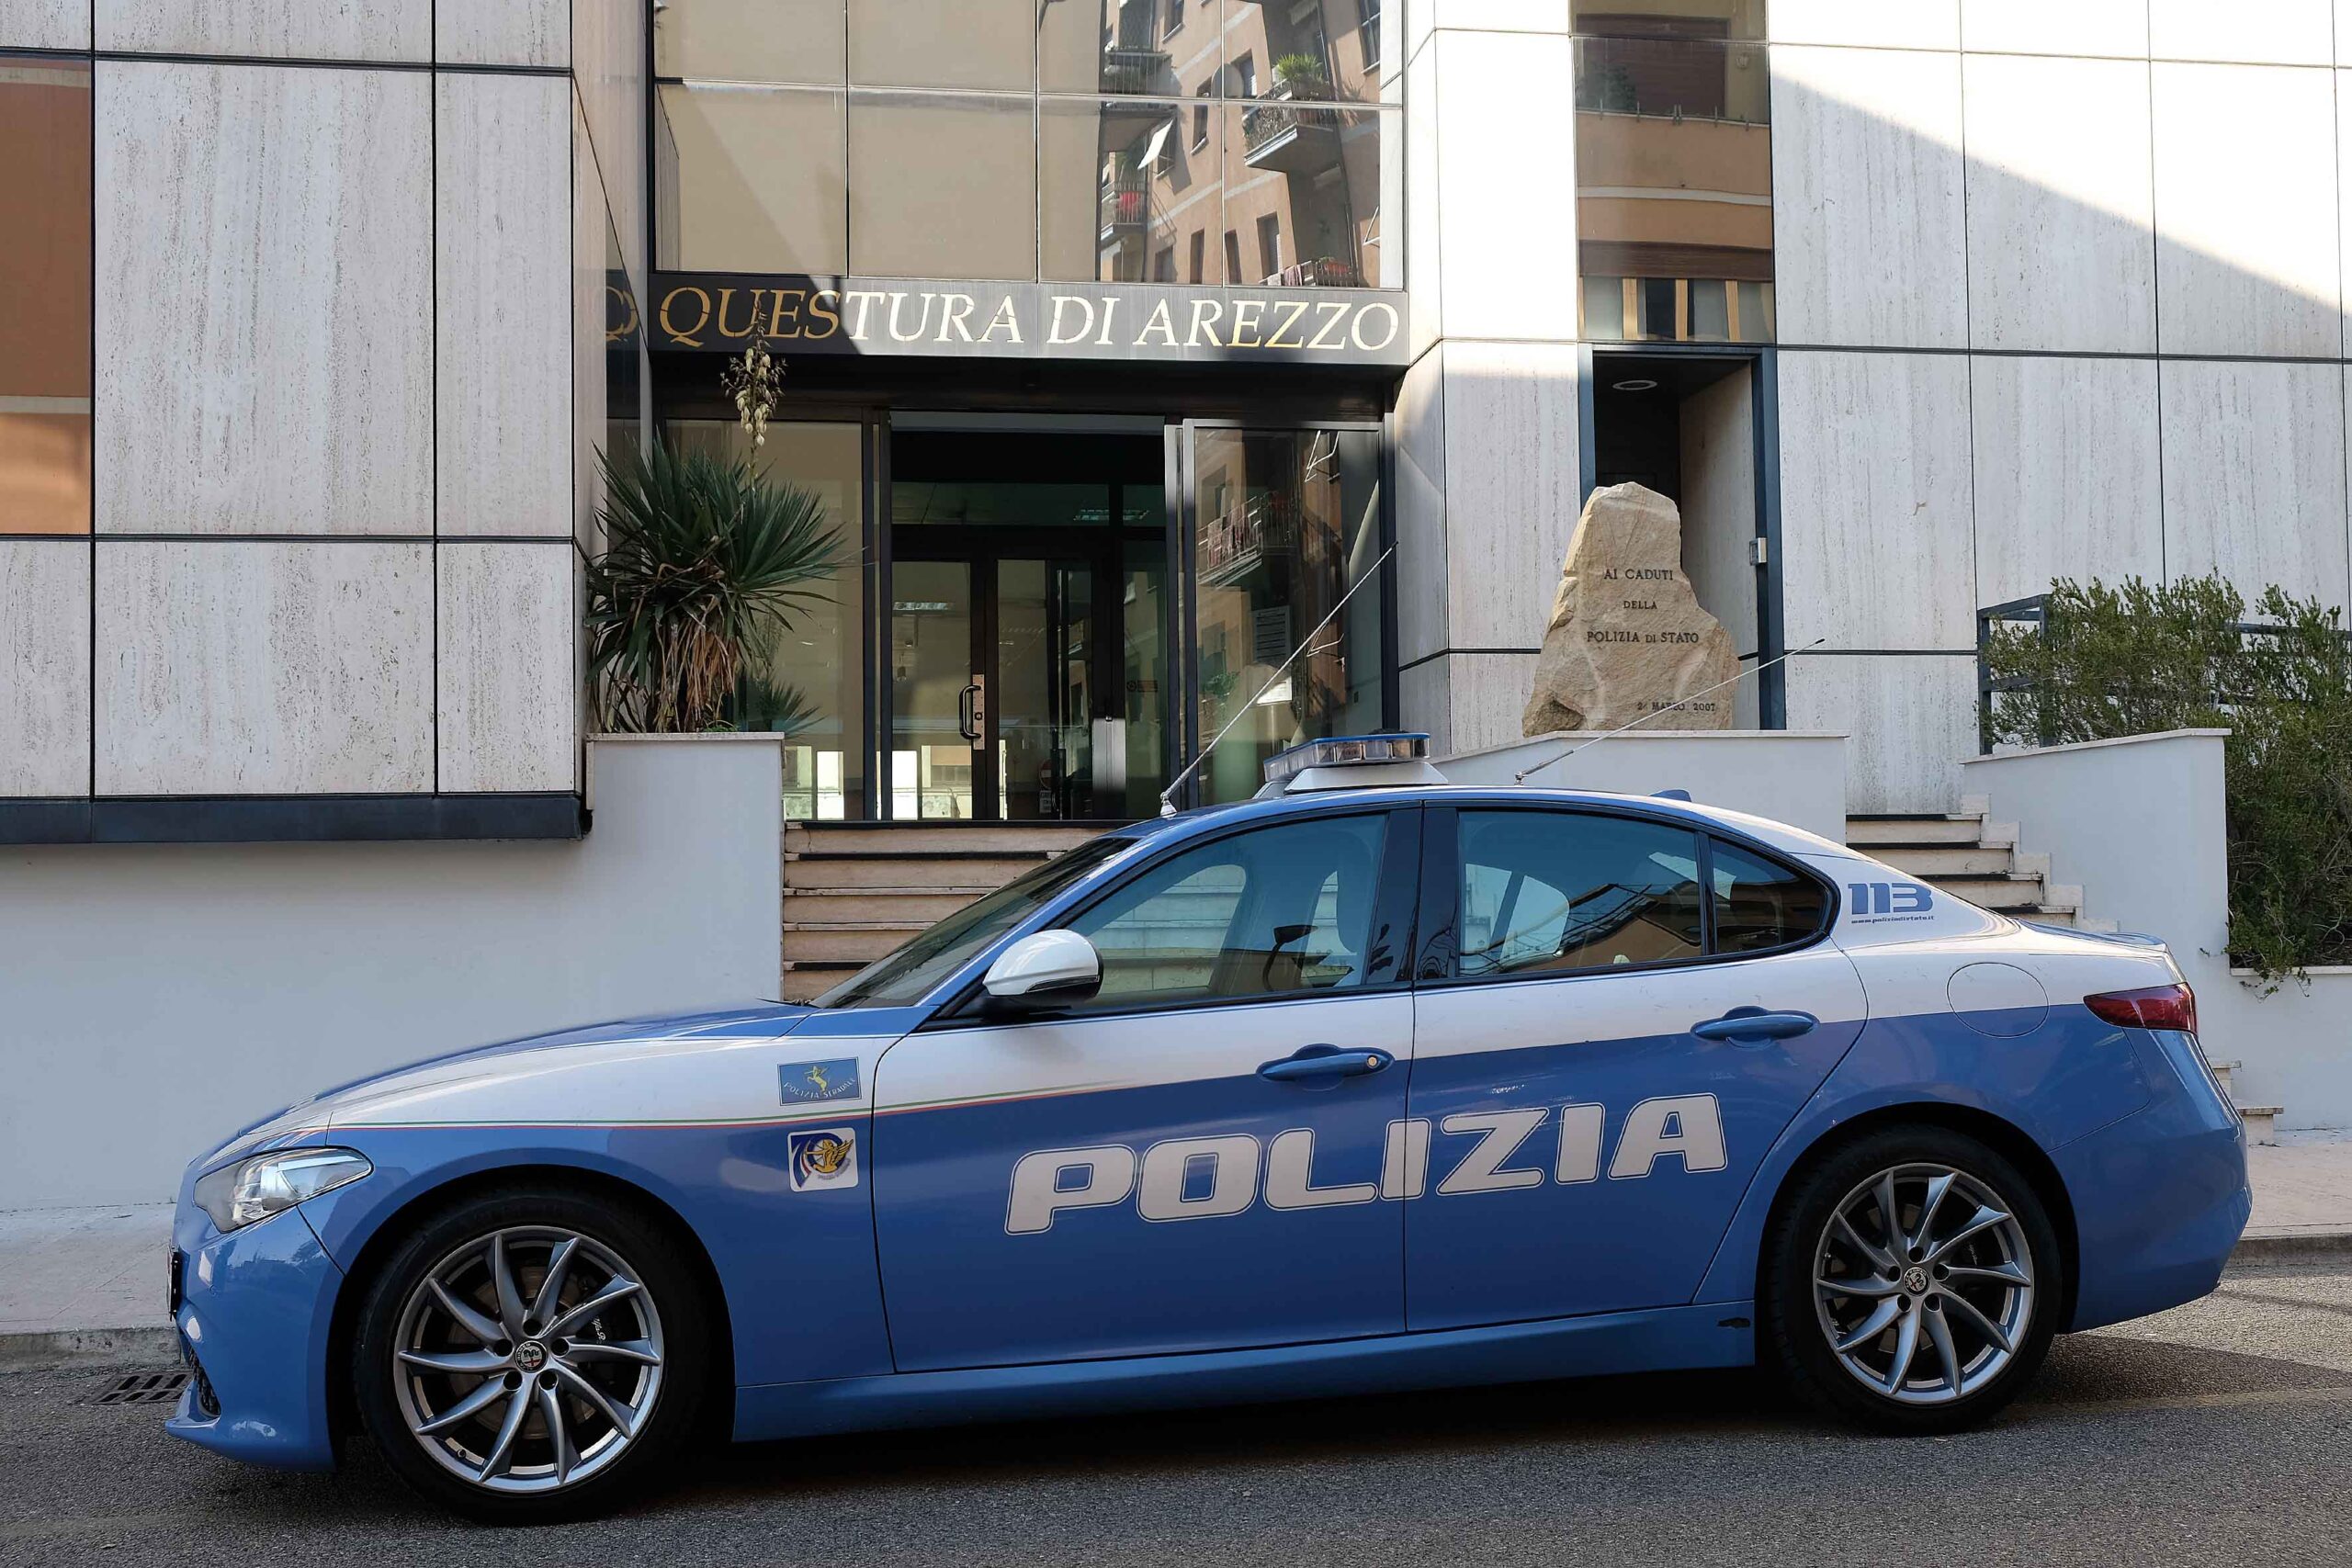 Nuovi arrivi alla Questura di Arezzo: dieci poliziotti trasferiti nella nostra provincia